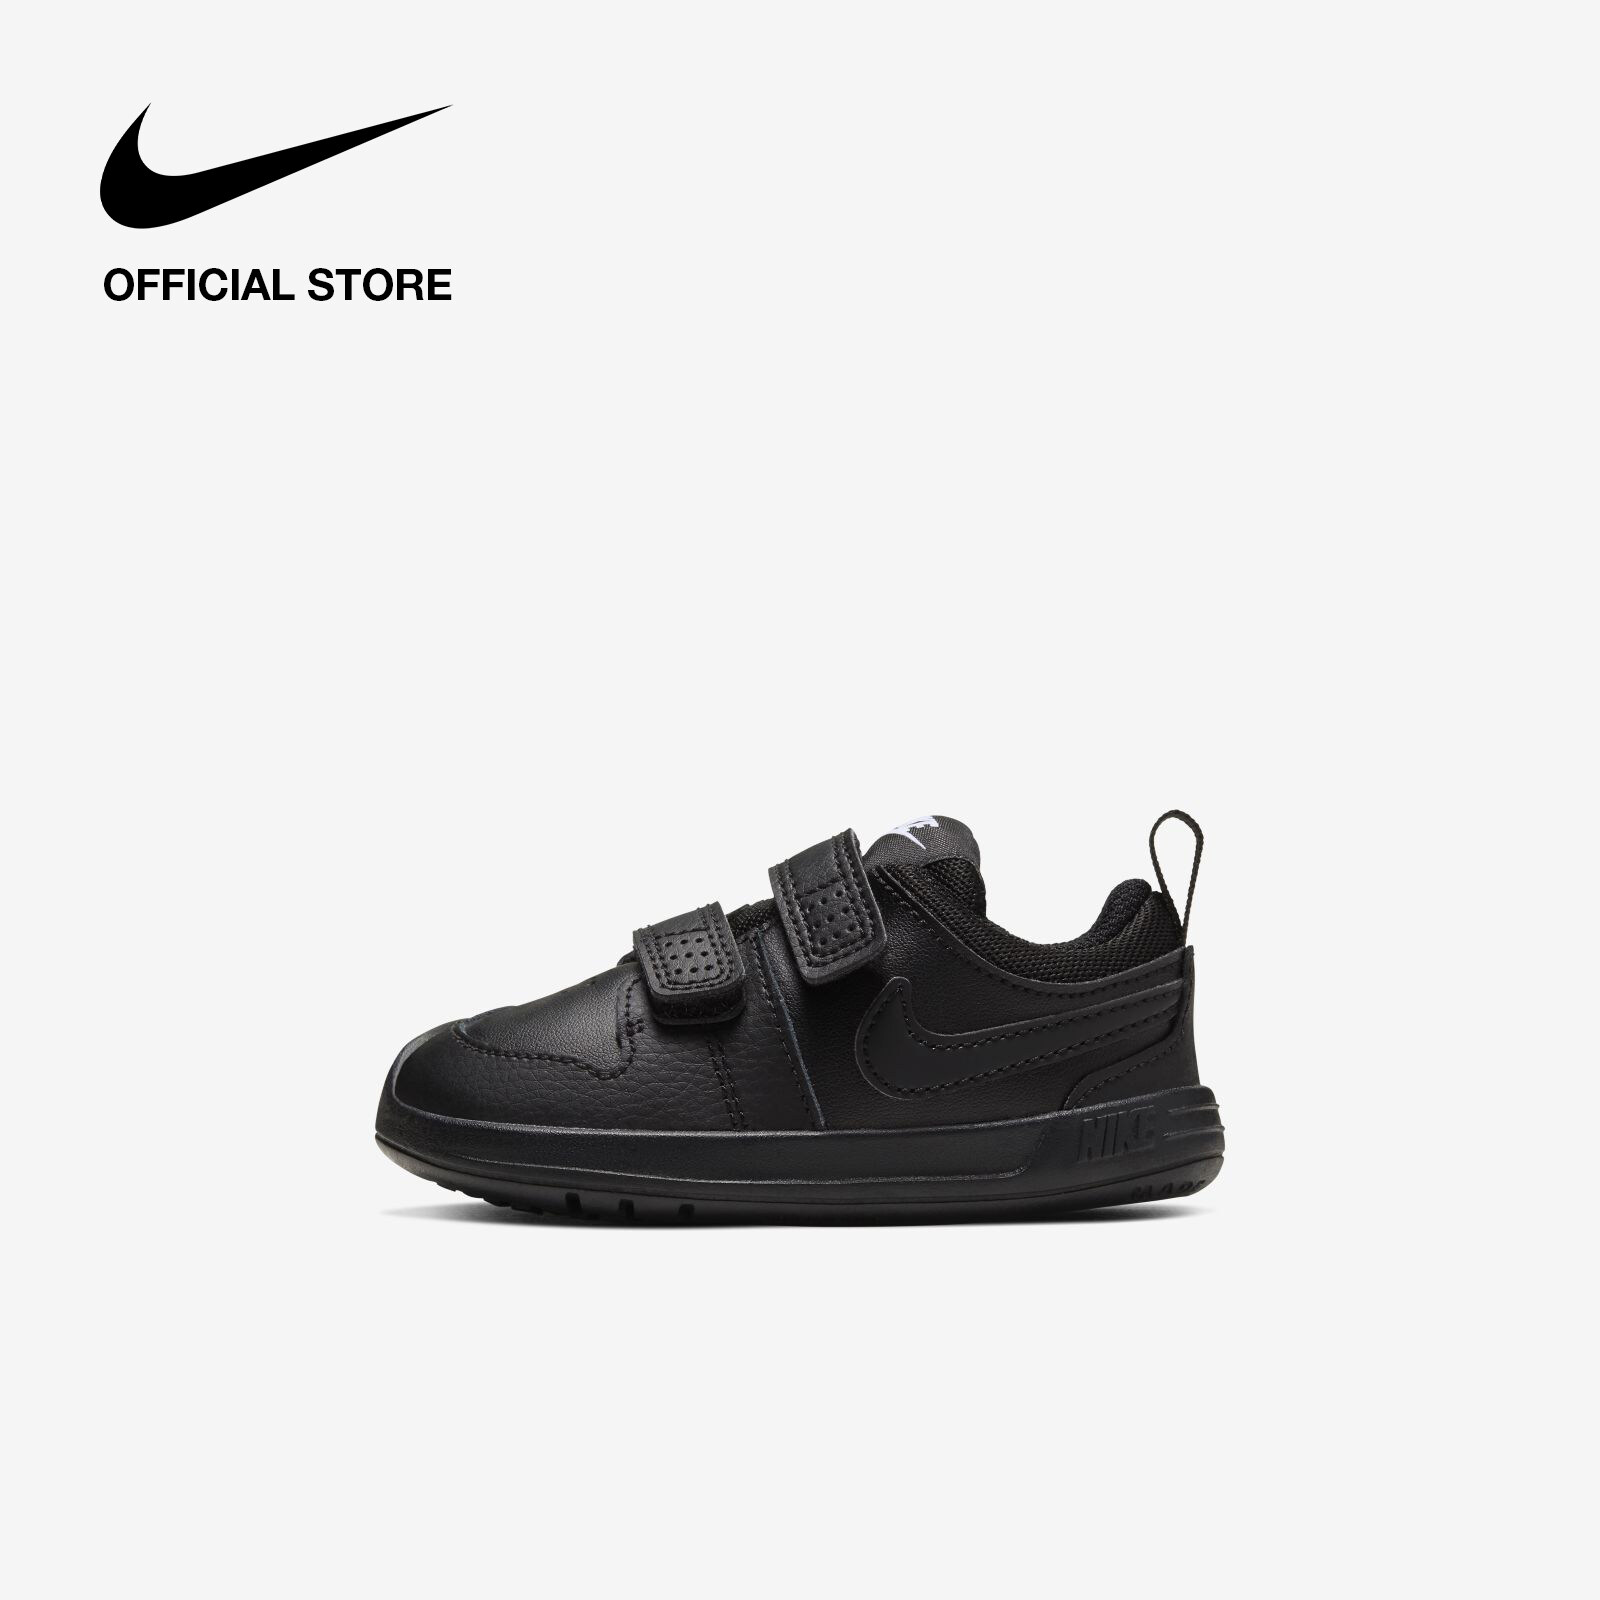 Nike Kids' Pico 5 Shoes - Black ไนกี้ รองเท้าเด็ก พิโค 5 (พีเอสวี) - สีดำ สี ดำ ขนาด EU  19.5 สี ดำขนาด EU  19.5